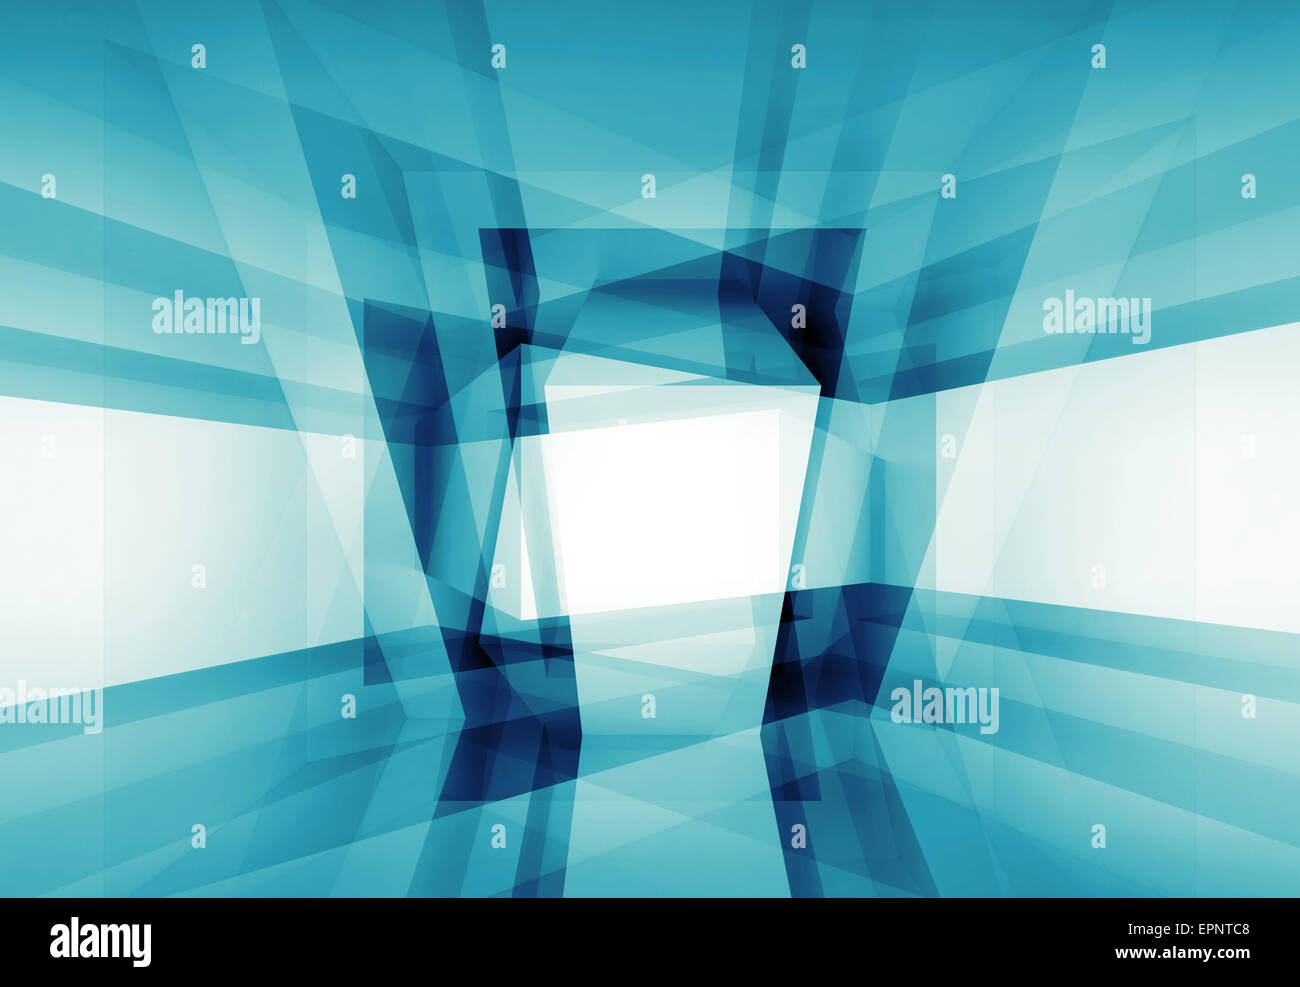 Abstrakt blau innen 3D-Hintergrund mit geometrischem Muster Stockfoto